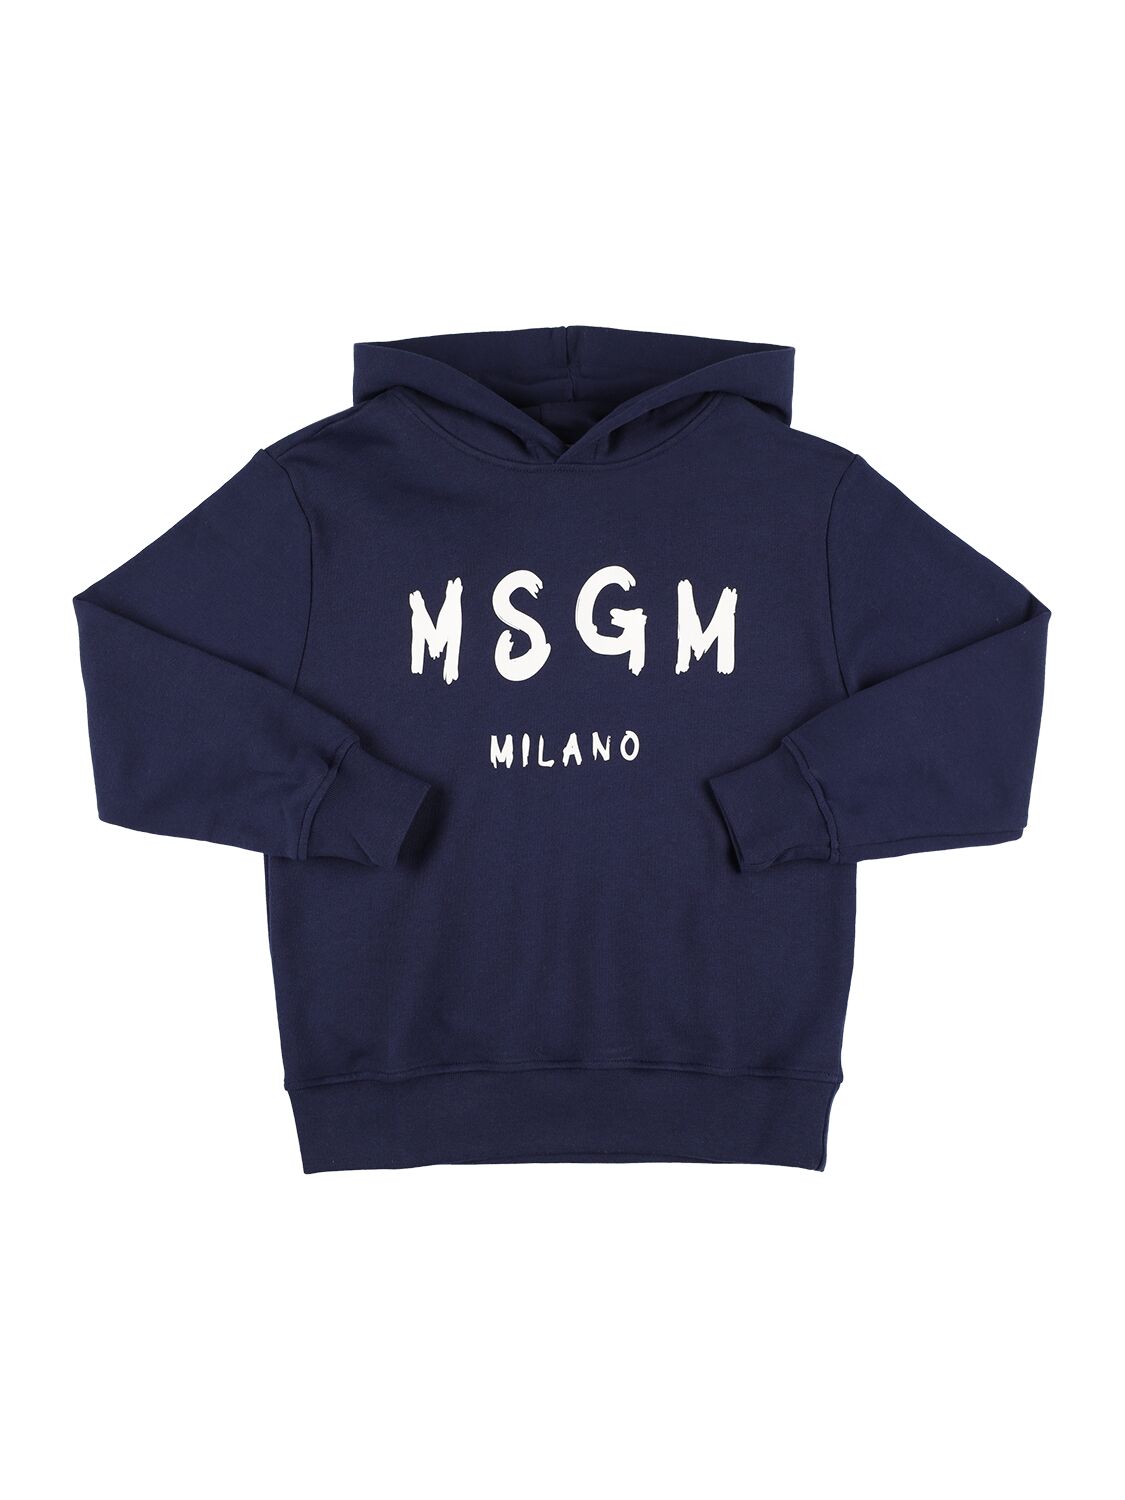 Msgm Kids' Printed Logo Hooded Sweatshirt In Blue